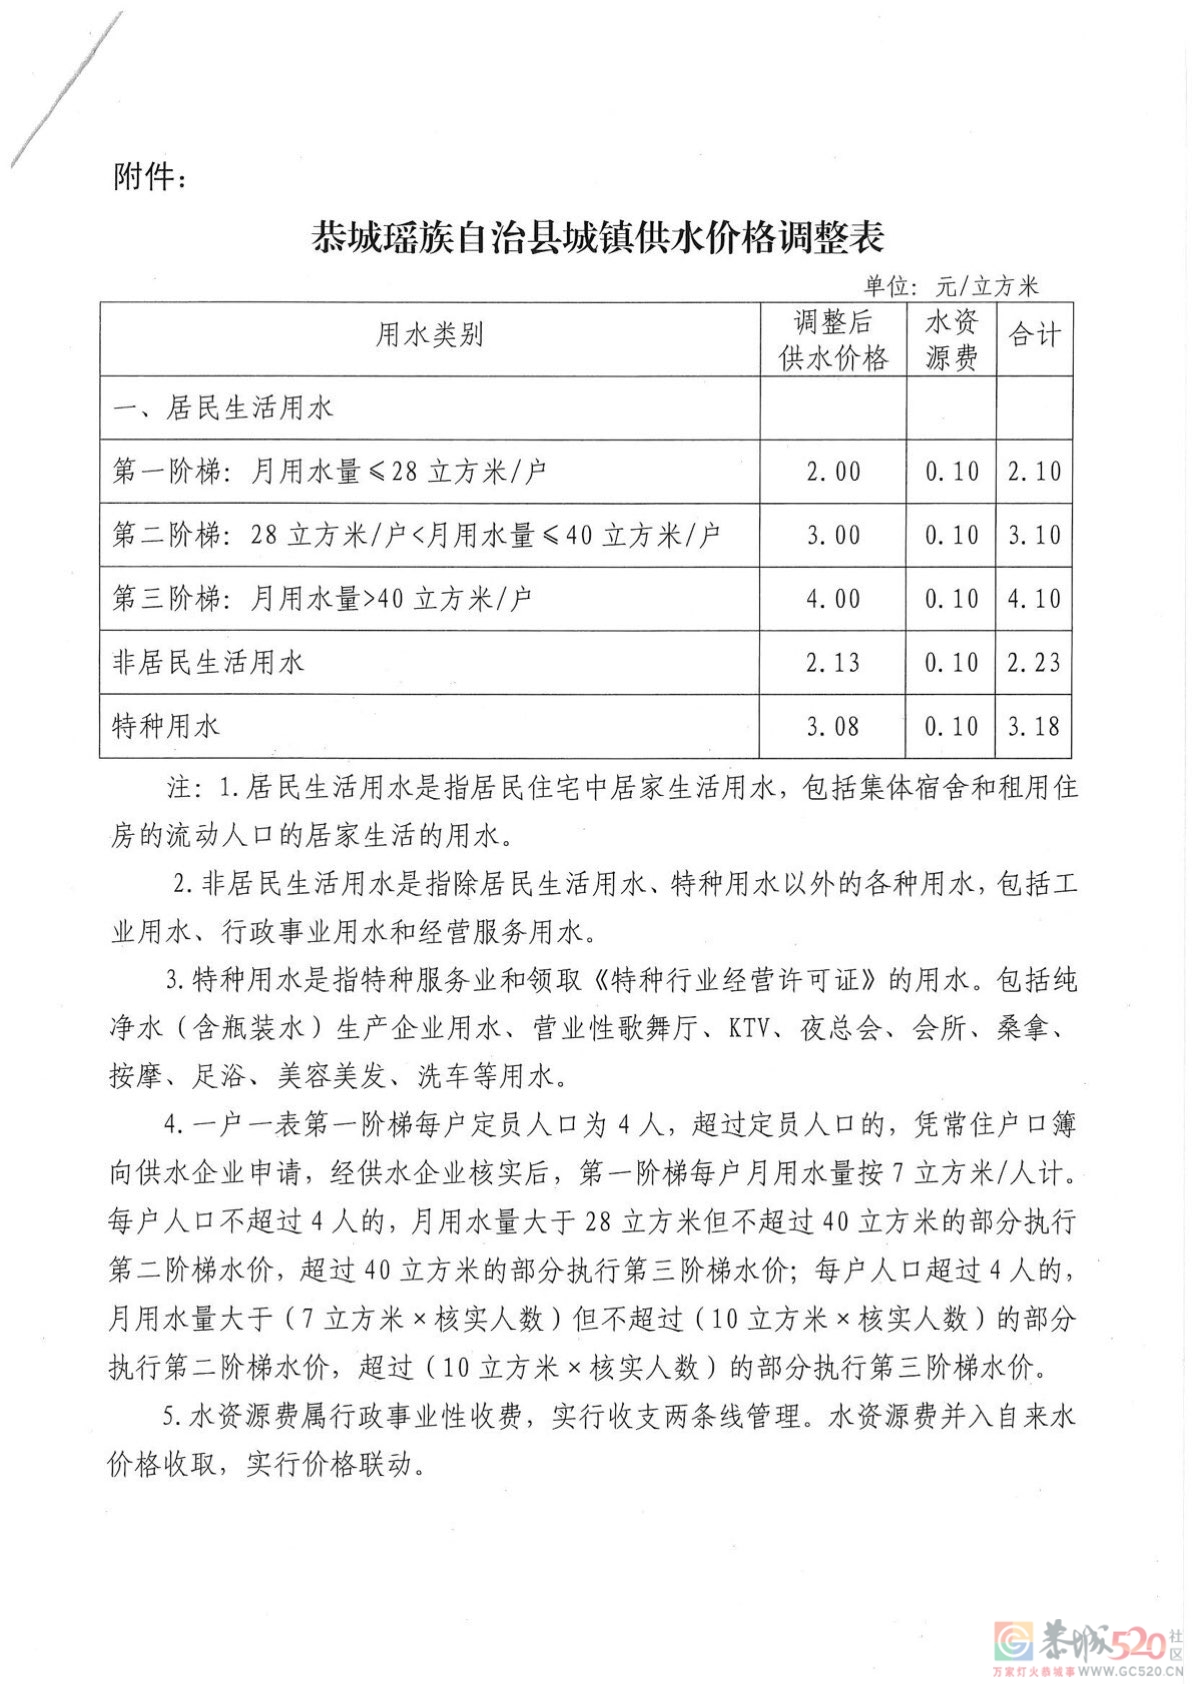 关于调整我县城镇供水价格的通知951 / 作者:恭城自来水公司 / 帖子ID:288089